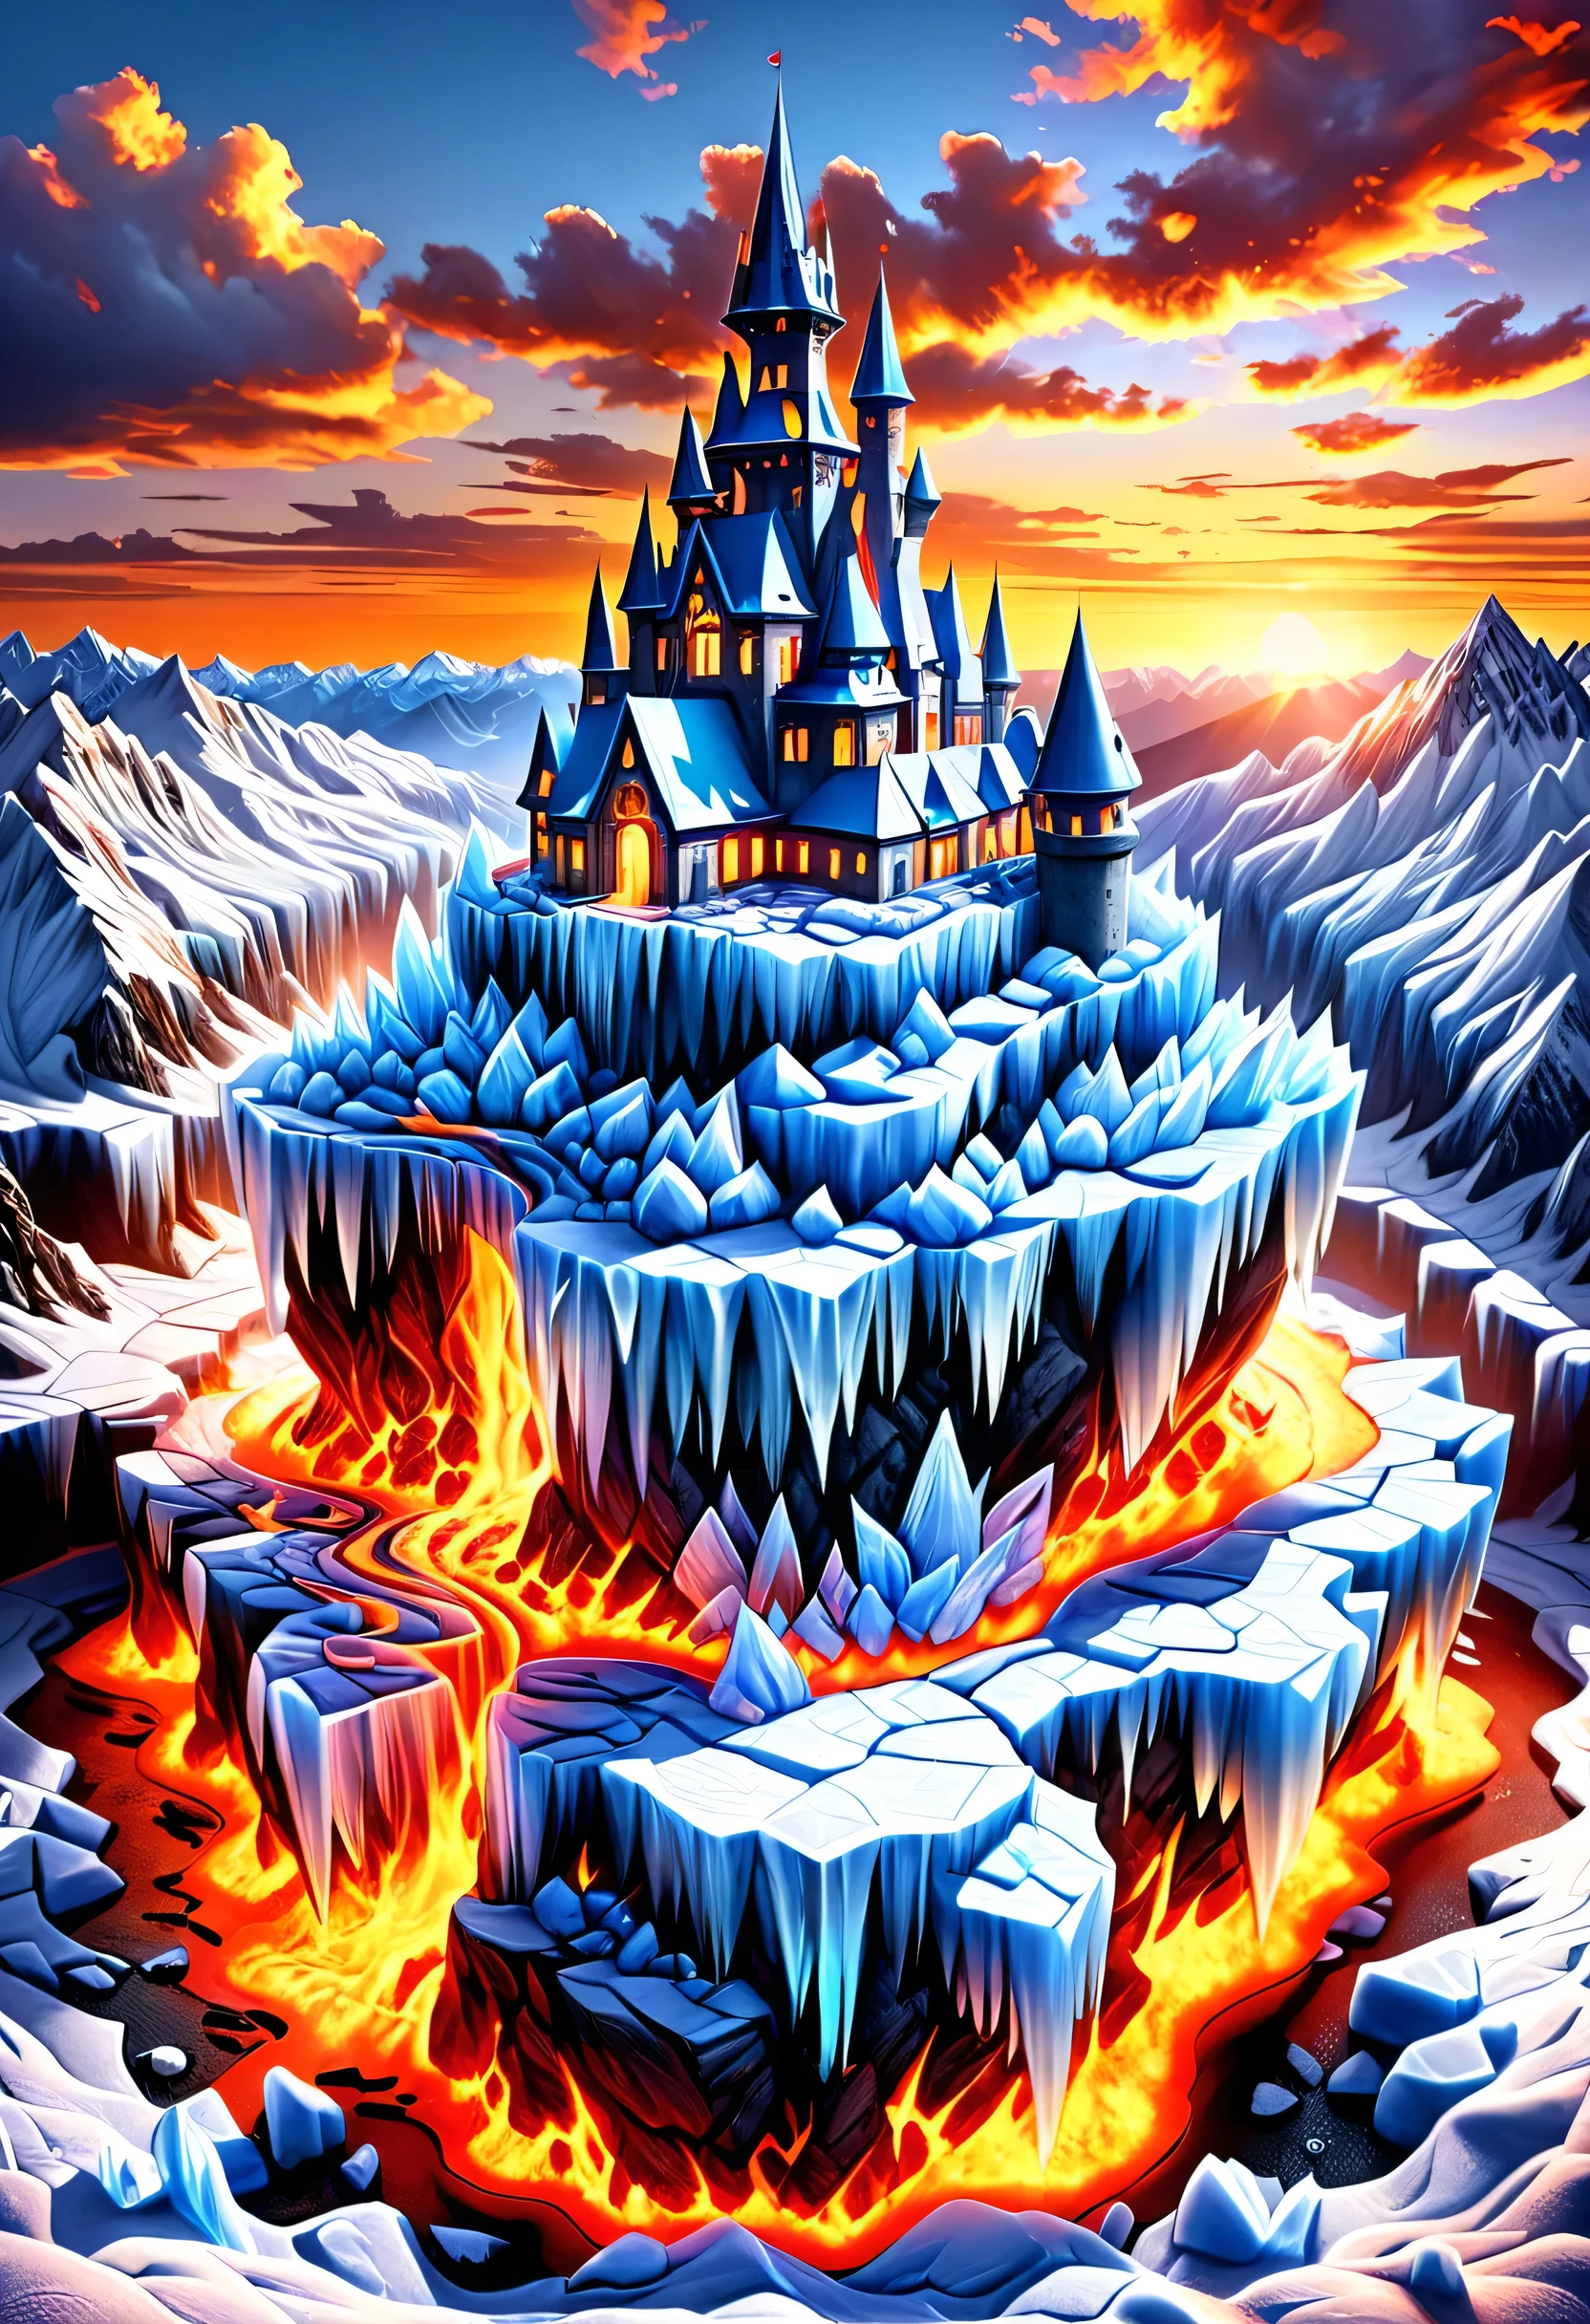 獲獎的全景攝影, 逼真的, 非常詳細 的 a castle 製成 from (冰: 1.3) 製成_的_冰 standing on the peak 的 a snowy mountain, an impressive best detailed castle 製成 from 冰 (逼真的, 非常詳細), 有塔, 橋樑, 充满熔岩的护城河 (逼真的, 非常詳細),  standing on top 的 a snowy mountain (傑作, 非常詳細, 最好的品質), 有鬆樹的, 日落之光, 空氣中有些雲,  高山山脈背景, 最真實, 最好的細節, 最好的品質, 16k, [超詳細], 傑作, 最好的品質, (非常詳細), 超廣角鏡頭, 照片寫實主義, depth 的 field, 有興趣